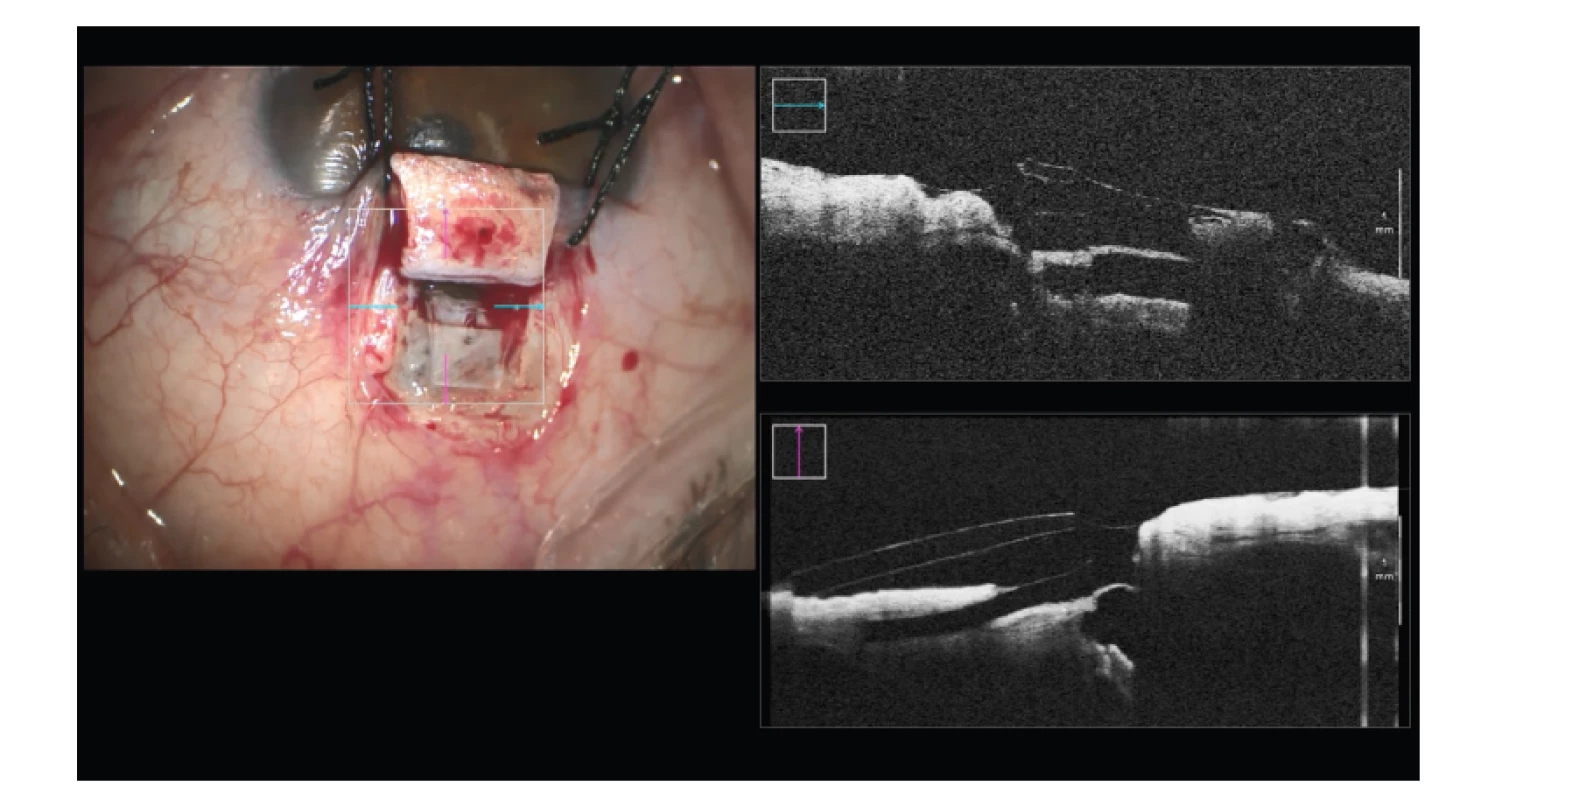 Hluboká sklerektomie s implantací subchoroidálního implantátu Esnoper
Clip – kontrola jeho pozice a celistvosti stěny Schlemmova kanálu